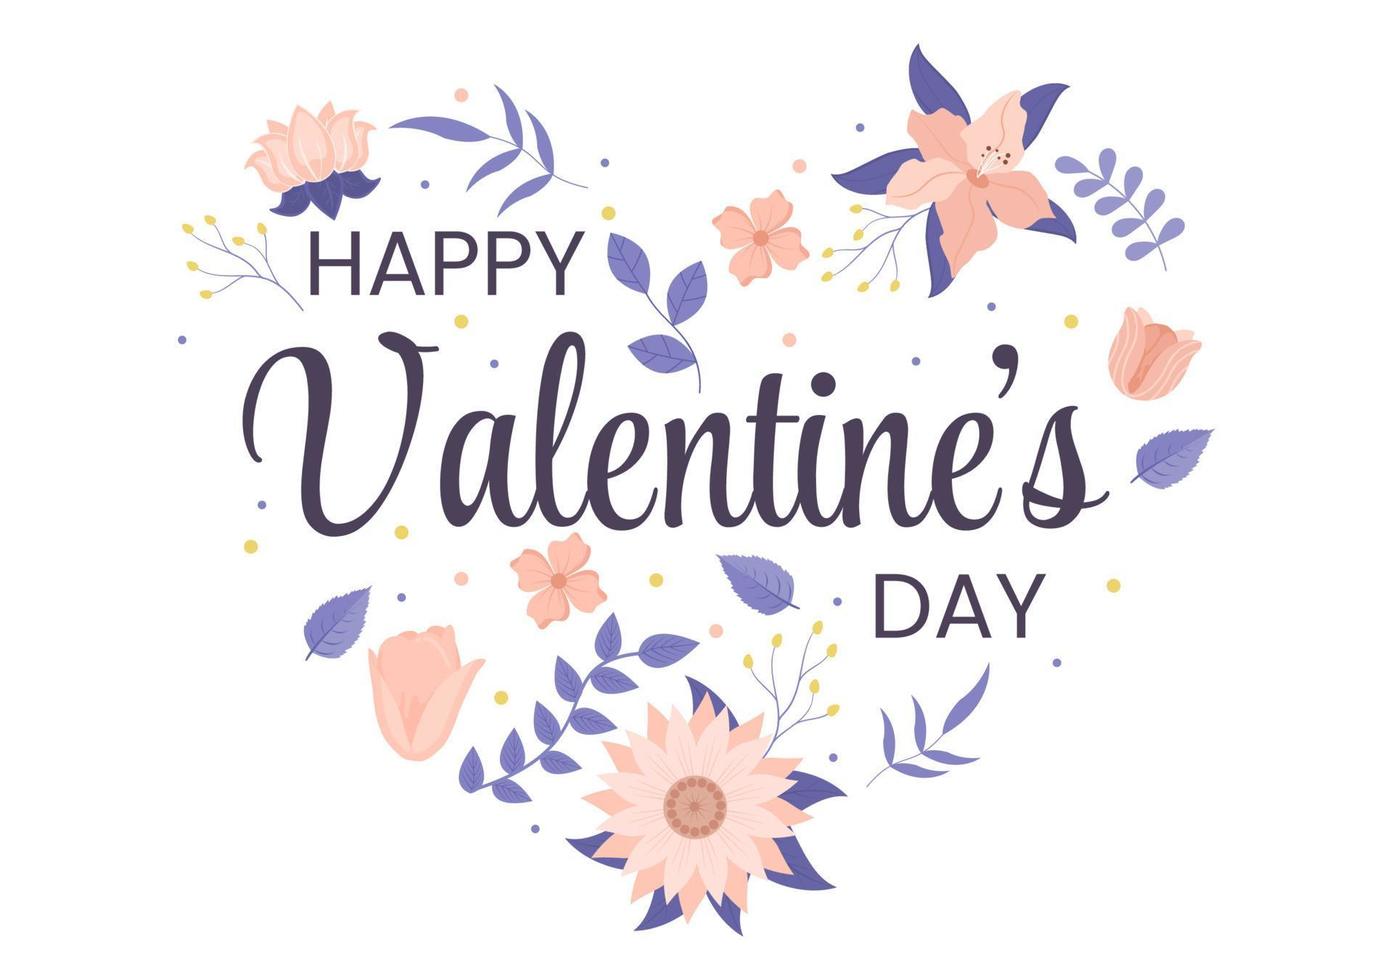 gelukkige Valentijnsdag platte ontwerp illustratie die wordt herdacht op 17 februari met teddybeer, chocolade en cadeau voor liefde wenskaart vector